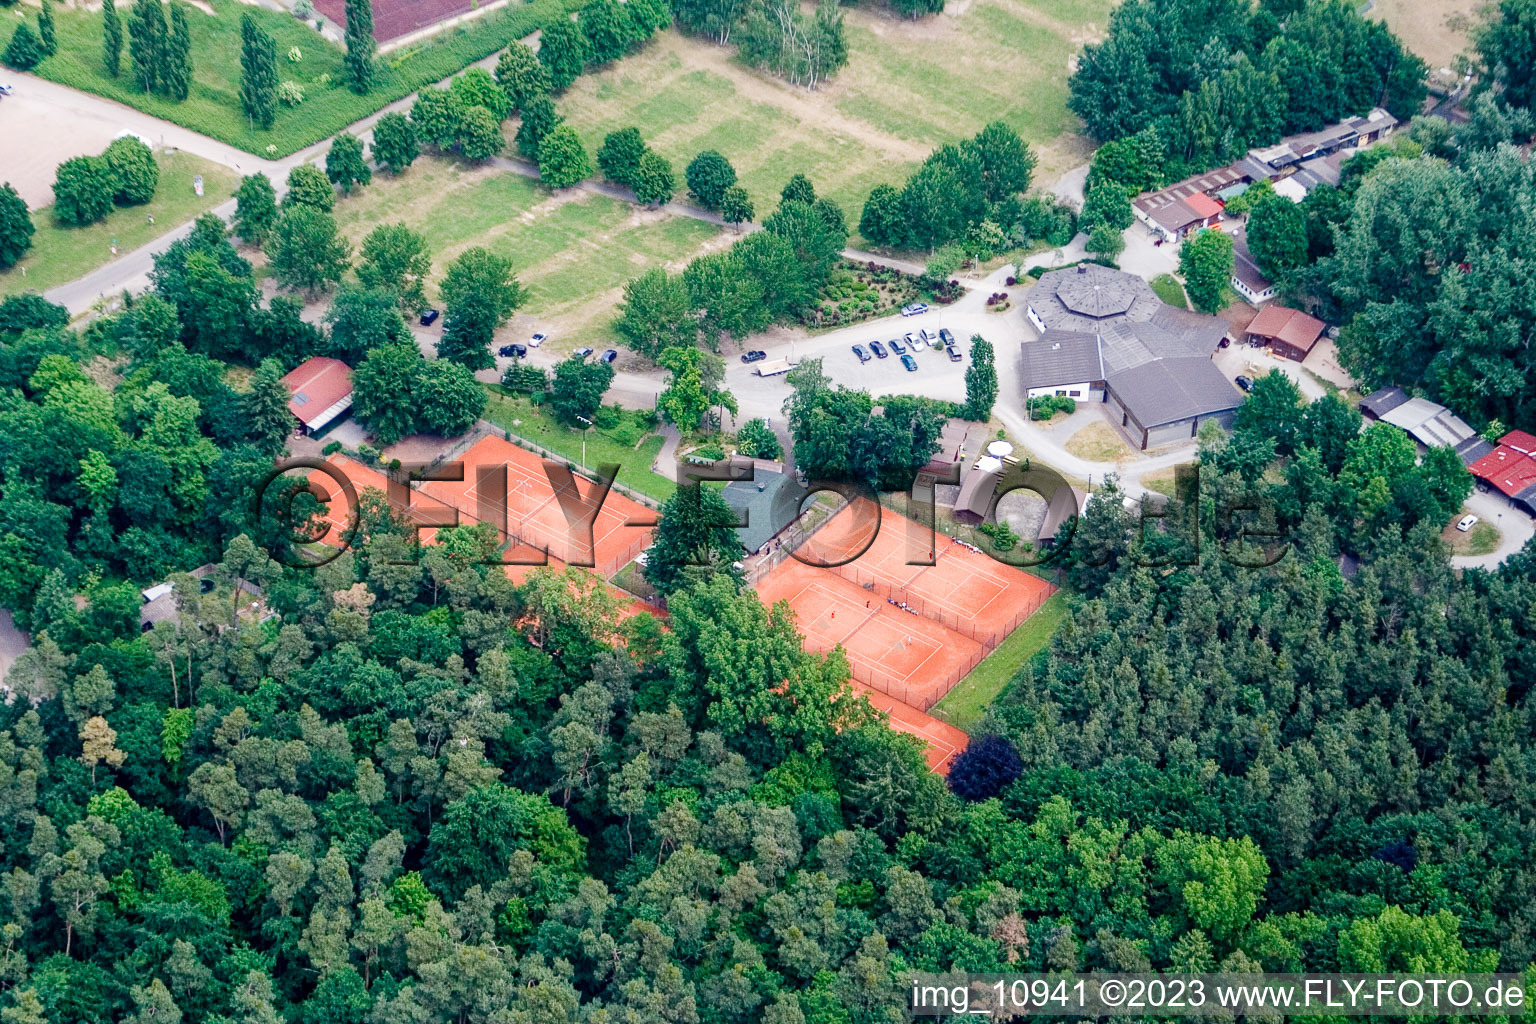 Photographie aérienne de Club de tennis à Rülzheim dans le département Rhénanie-Palatinat, Allemagne